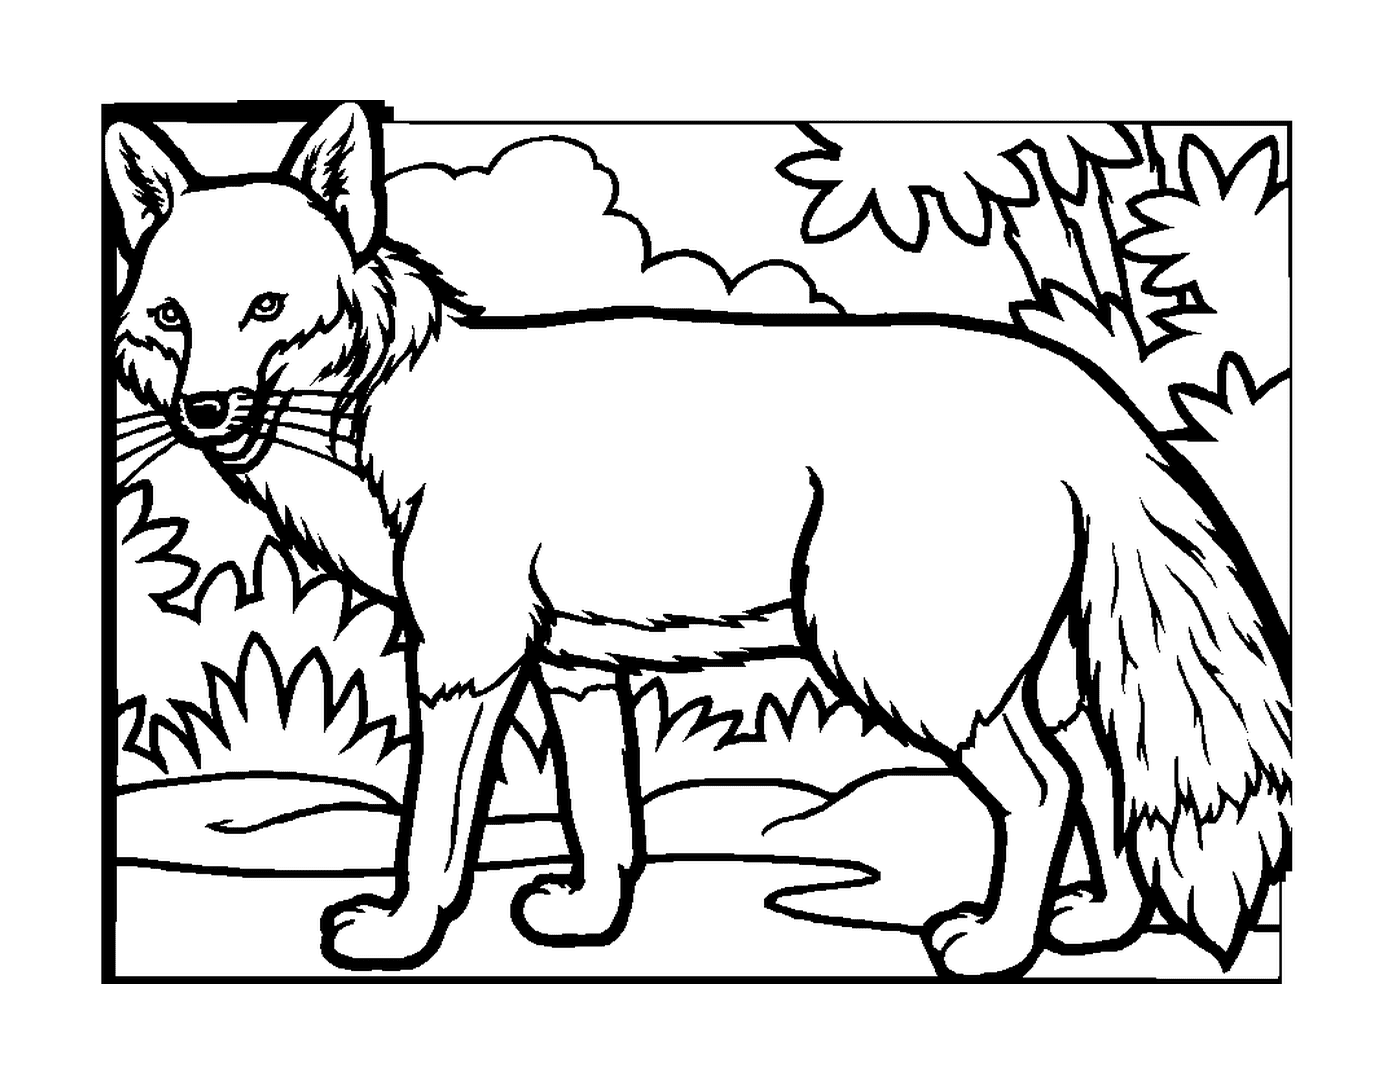  Fox na floresta 